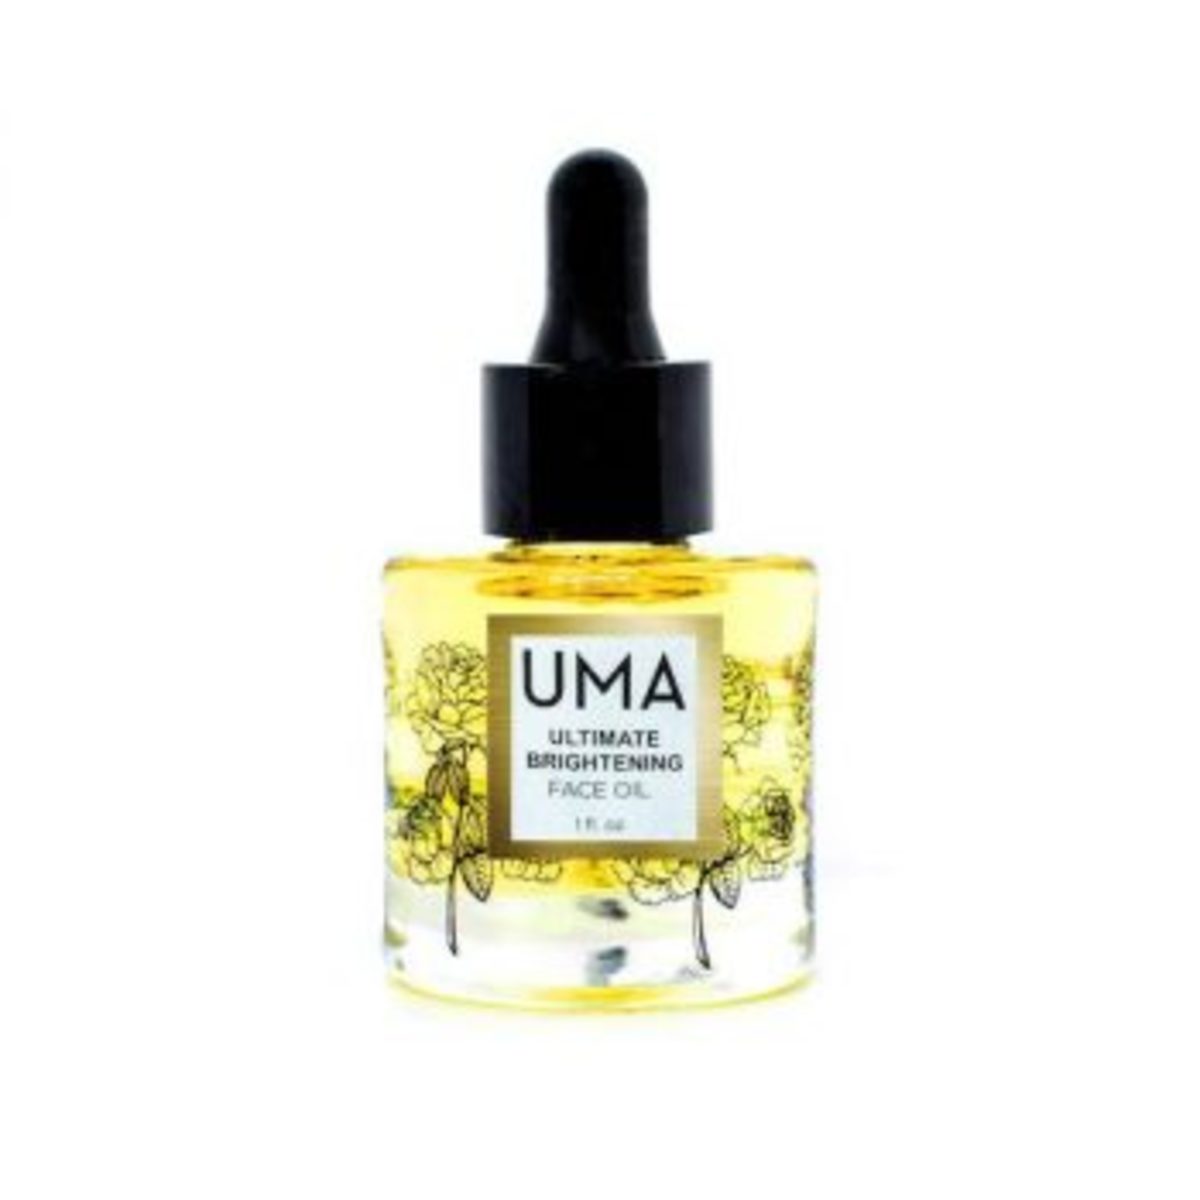 10-uma-ultimate-brightening-face-oil-350x350